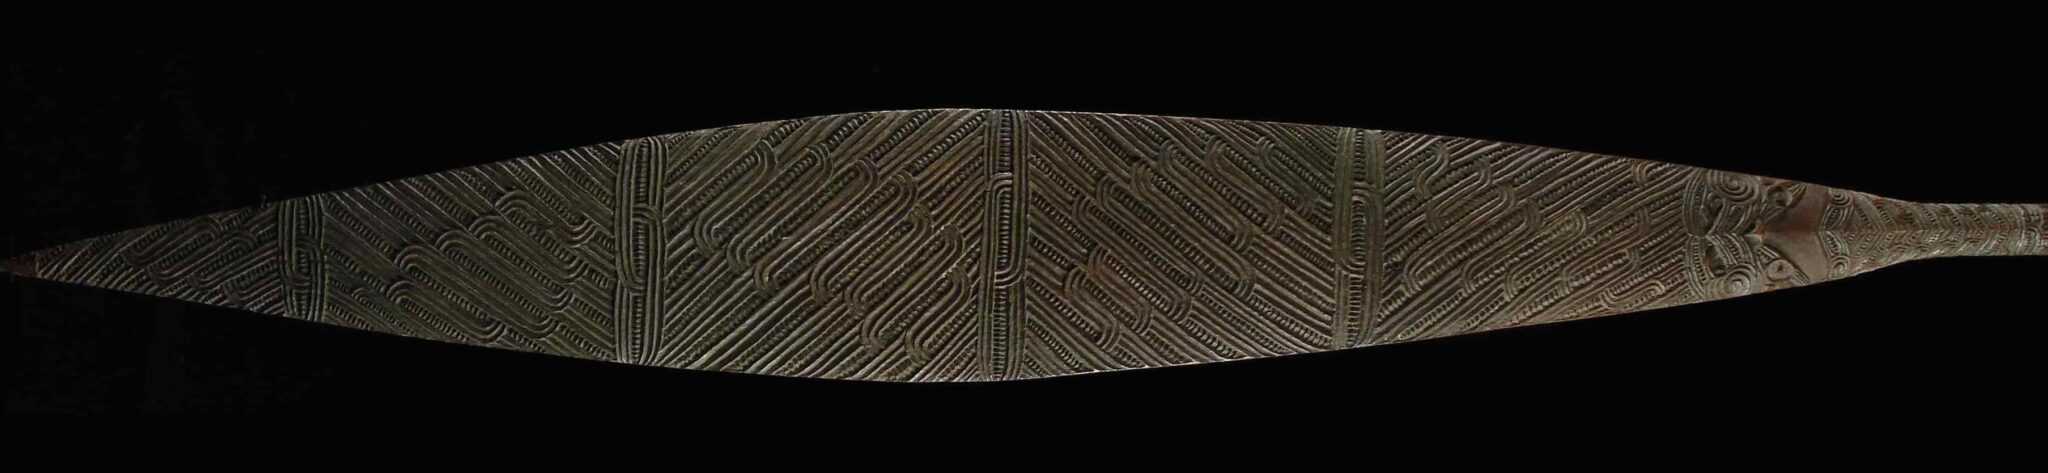 Maori paddle blade